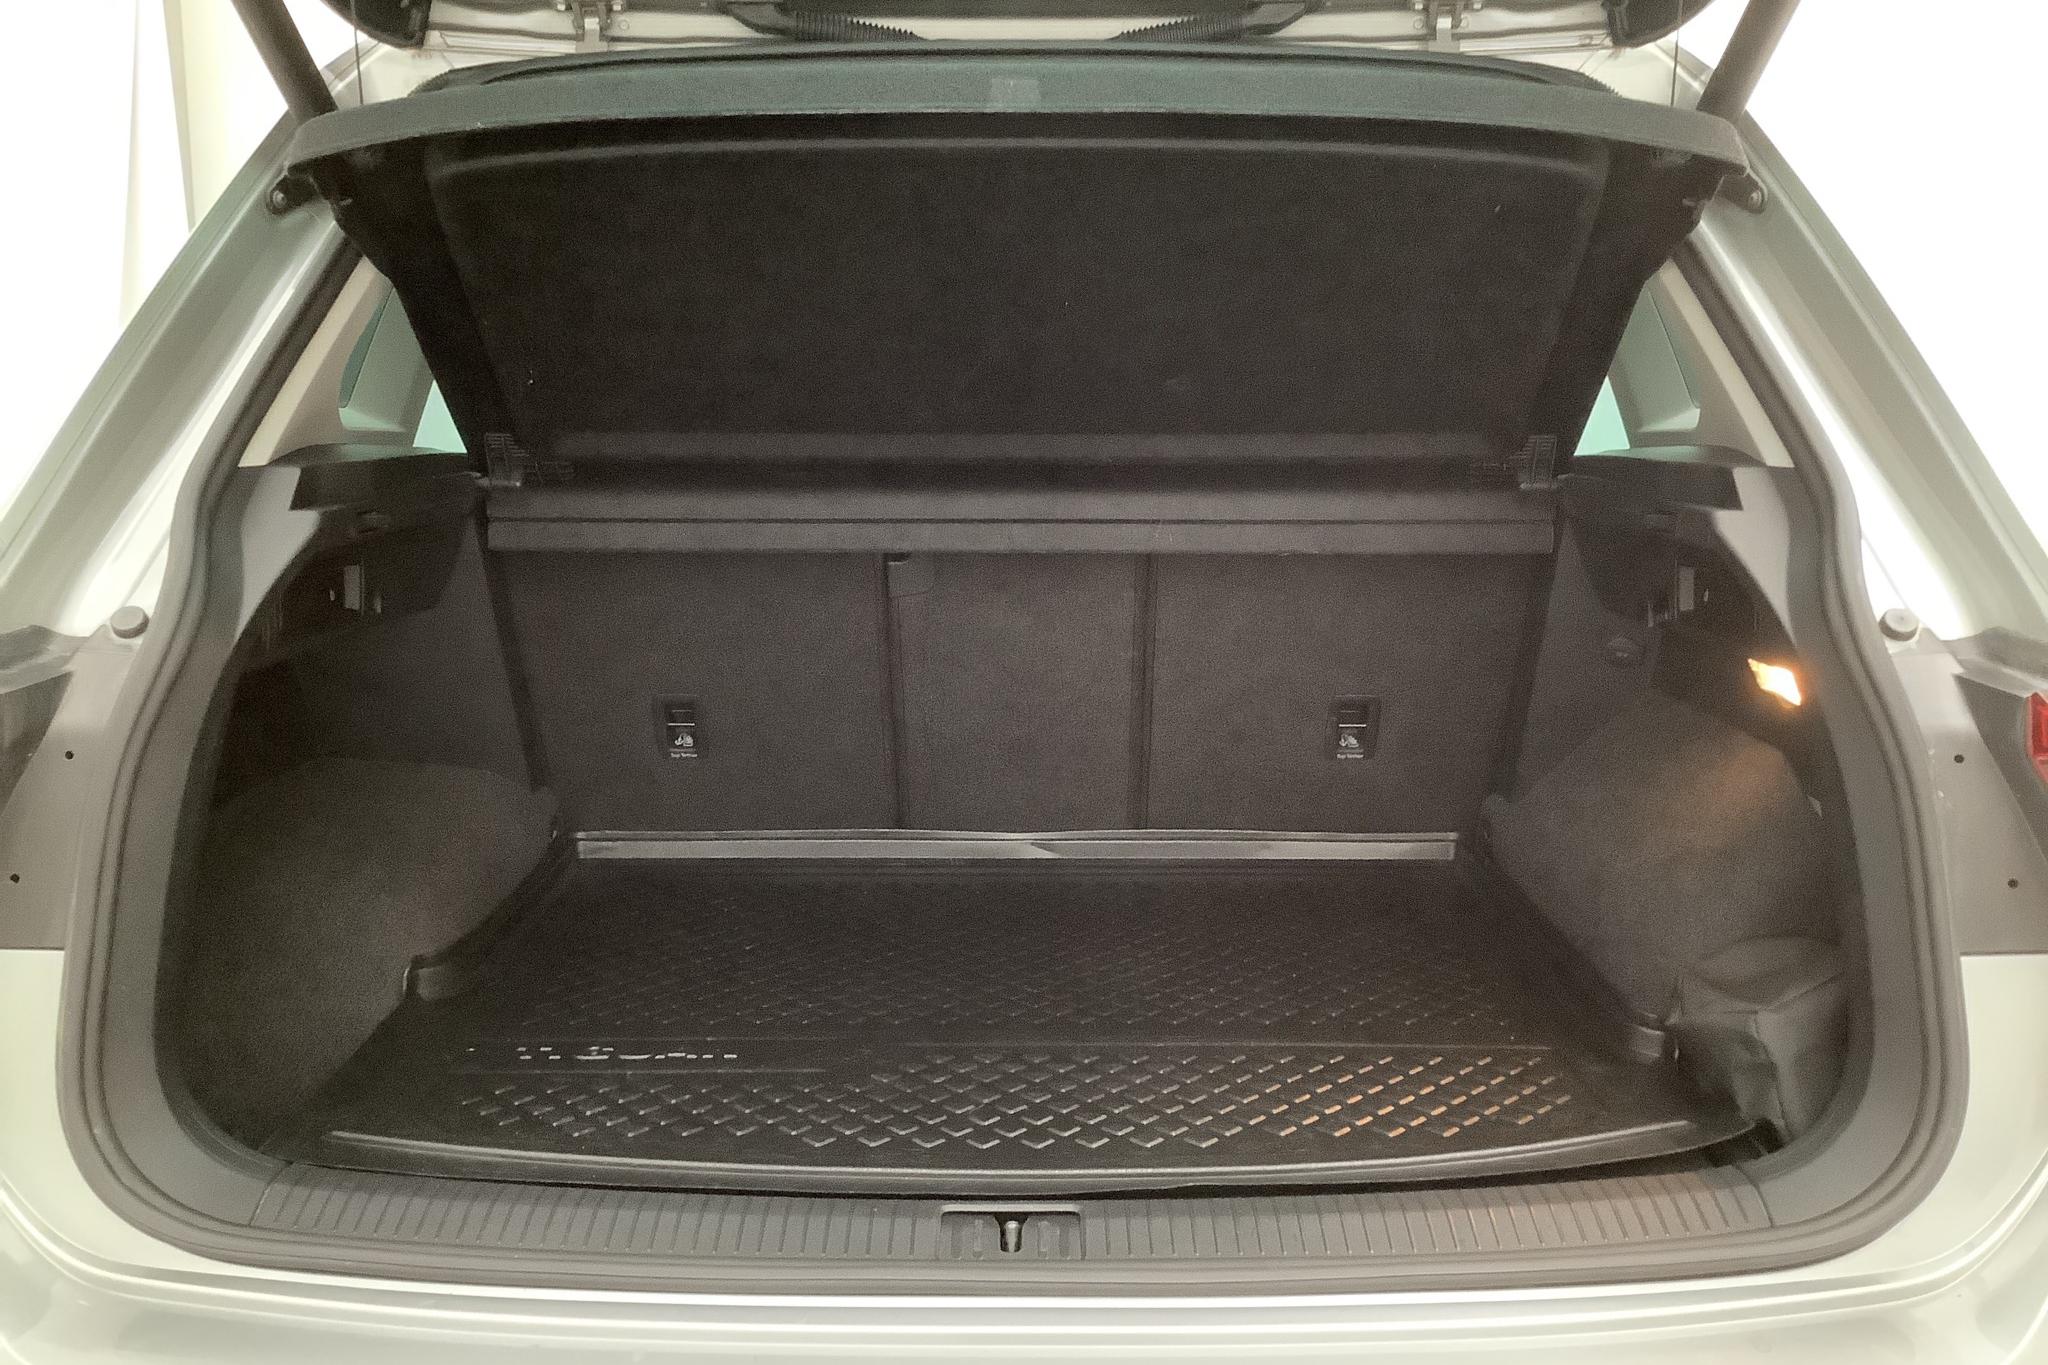 VW Tiguan 2.0 TDI 4MOTION (190hk) - 97 450 km - Automatic - silver - 2018